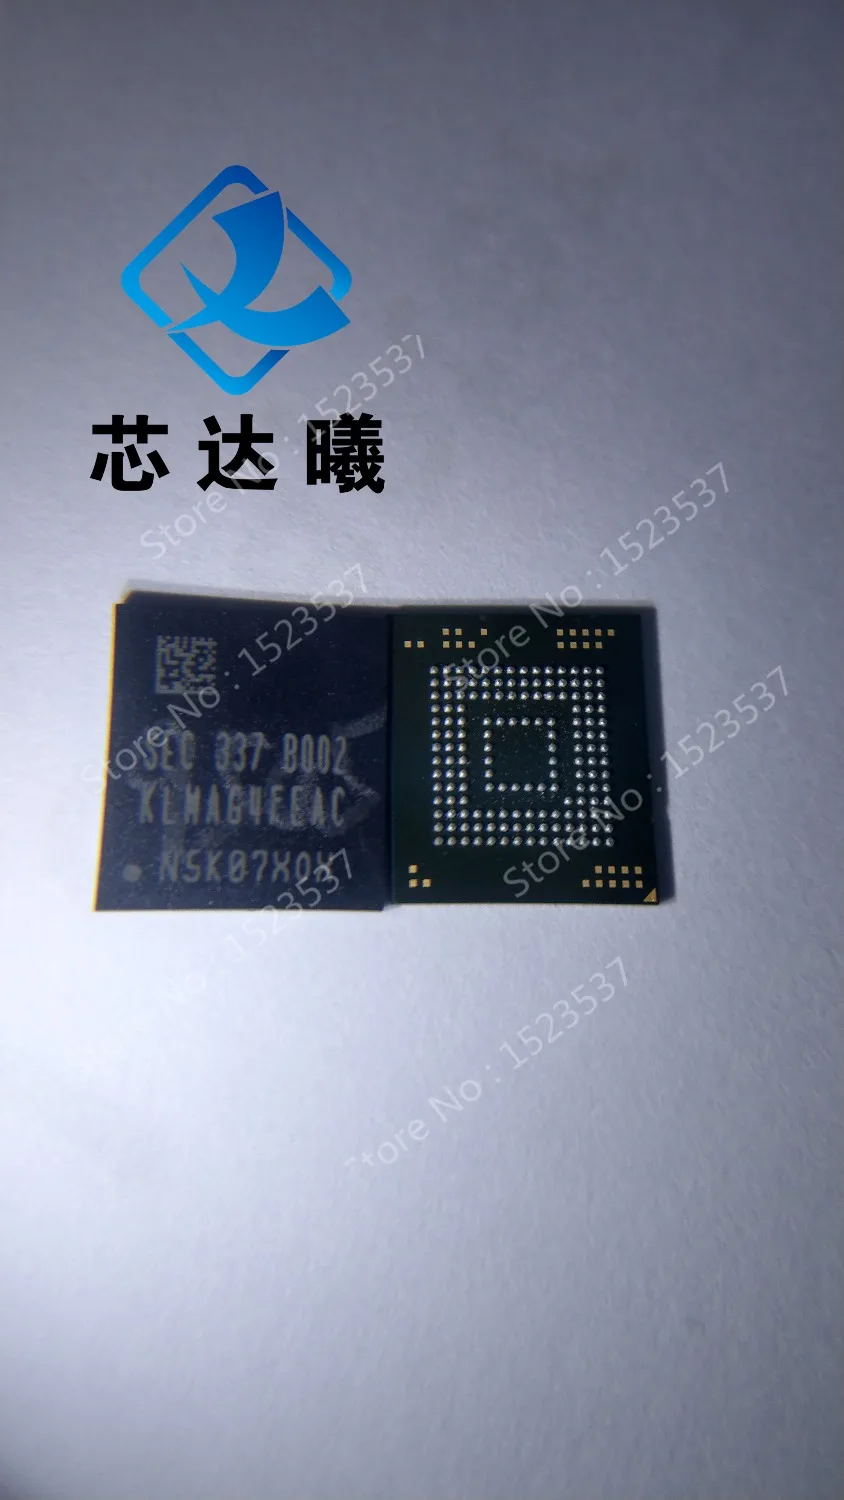 XINDAXI KLMAG4FEAC-B002 Малый размеры BGA153Ball EMMC 16 Гб памяти мобильного телефона новый